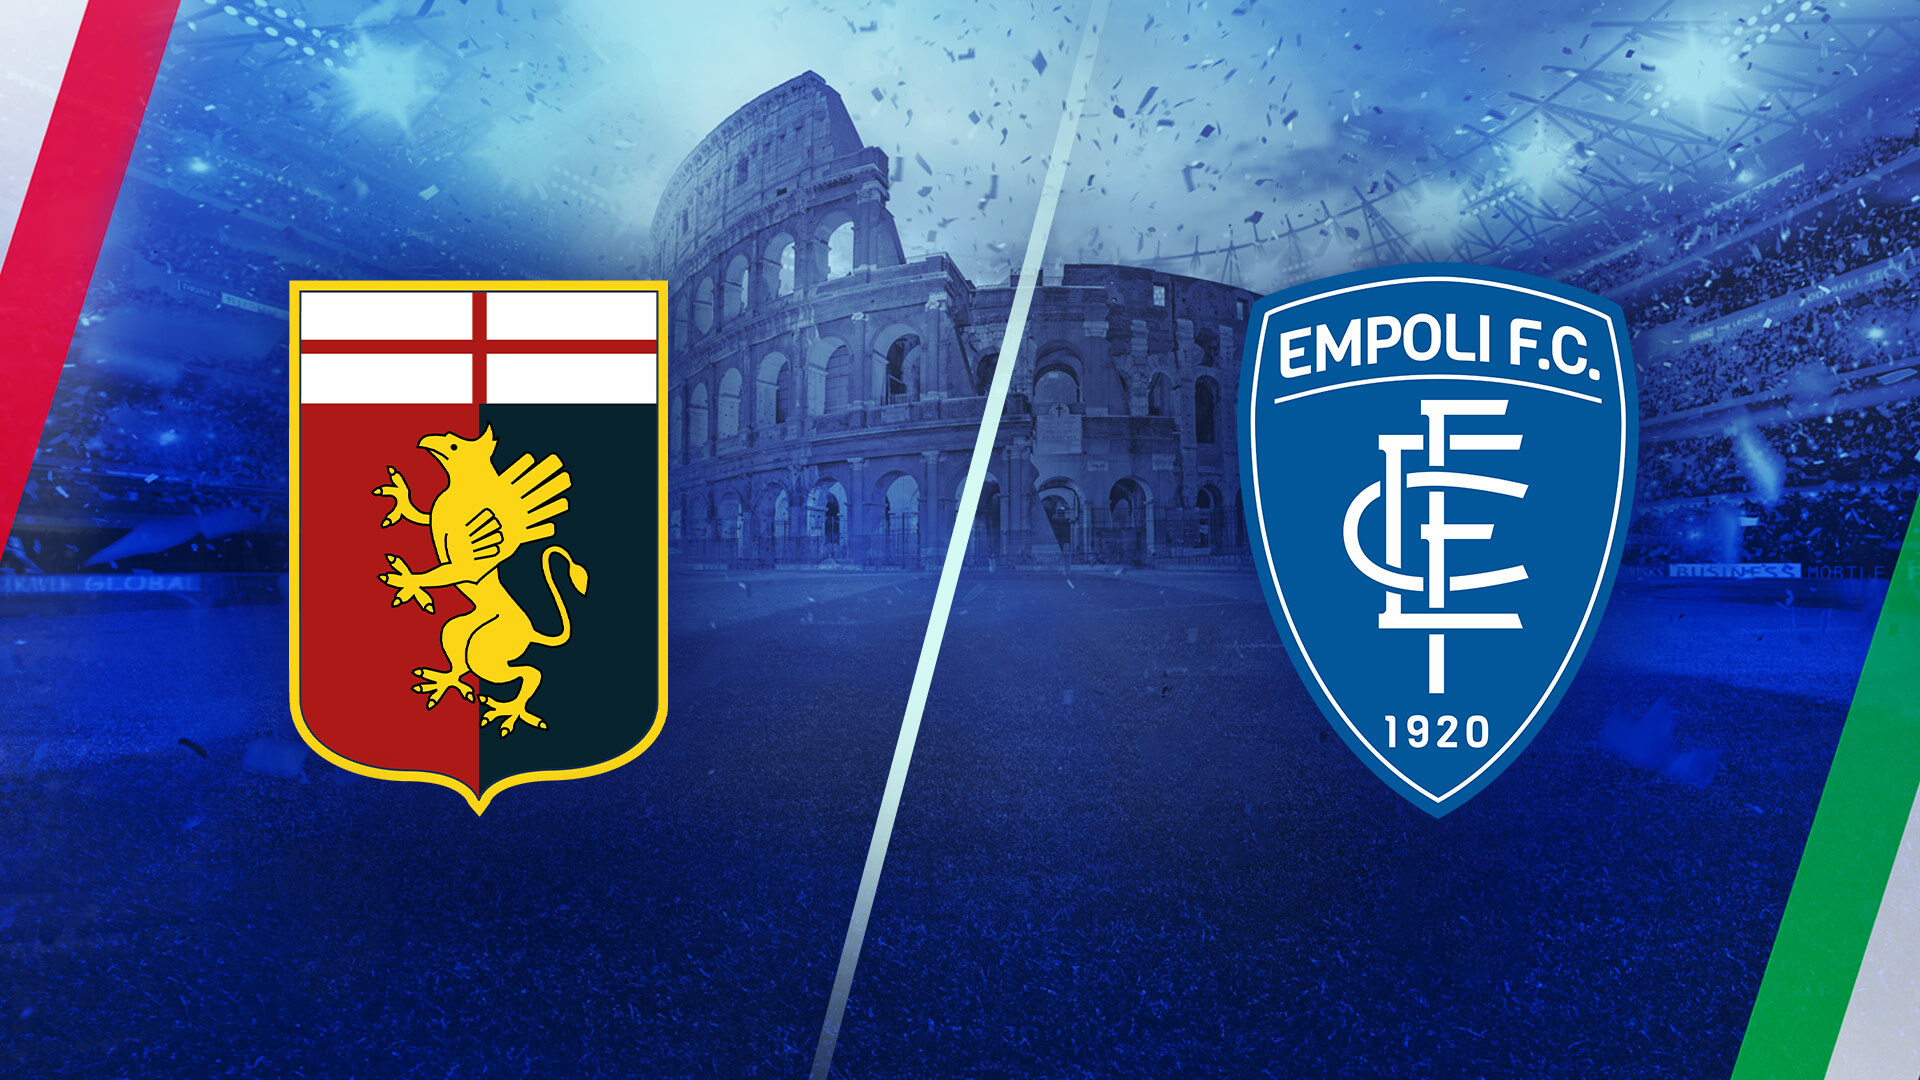 11872283 - Serie A - Genoa vs EmpoliSearch